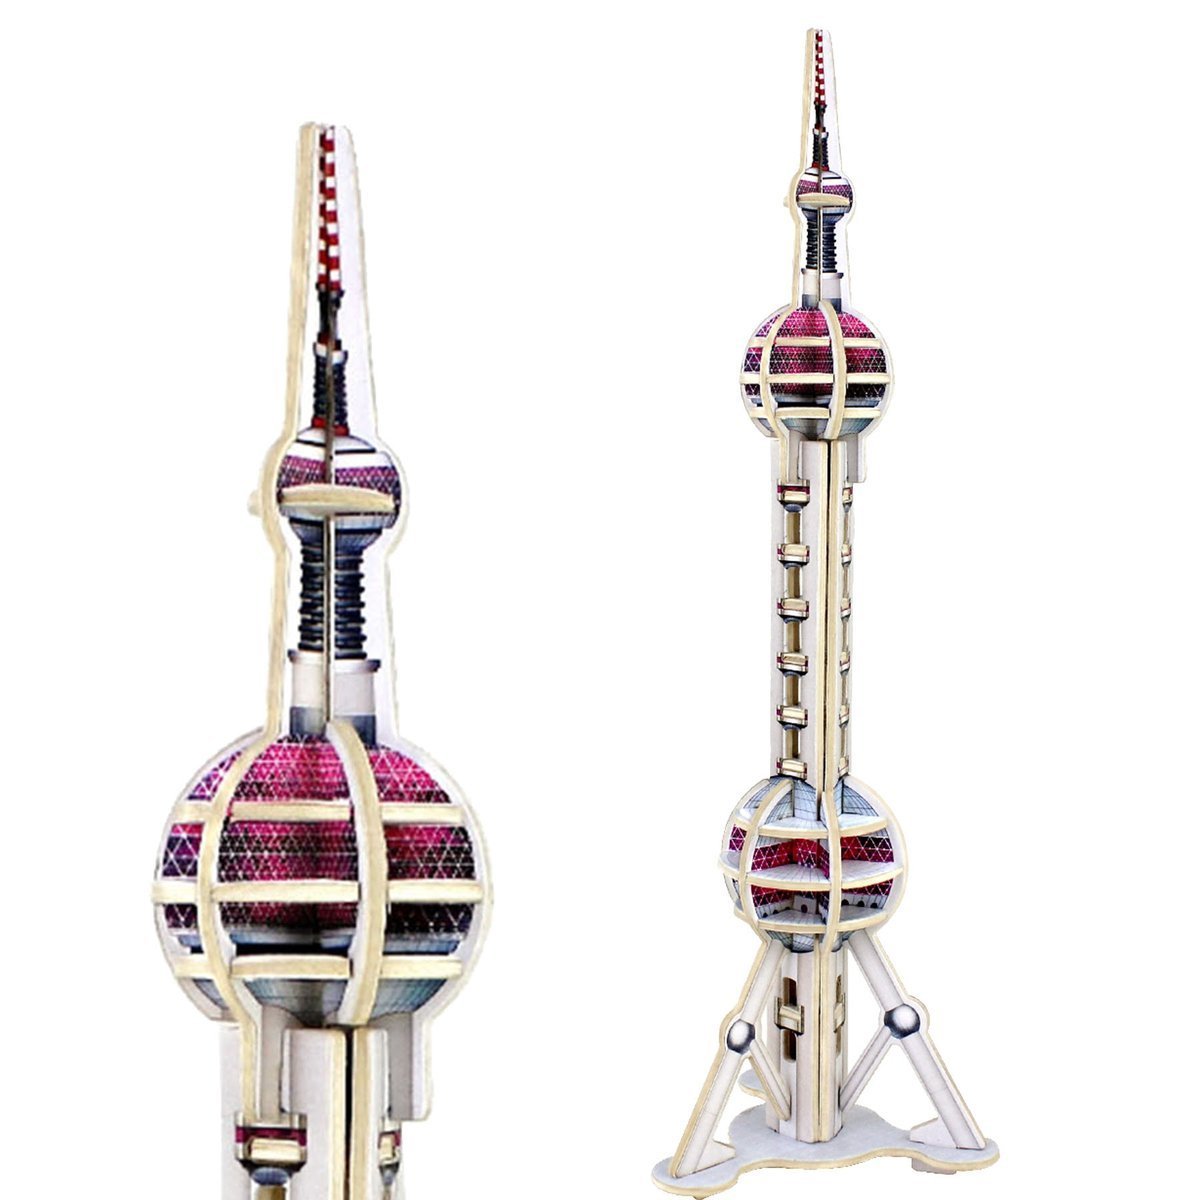 ROBOTIME Drewniany Model Puzzle 3D Wieża Telewizyjna